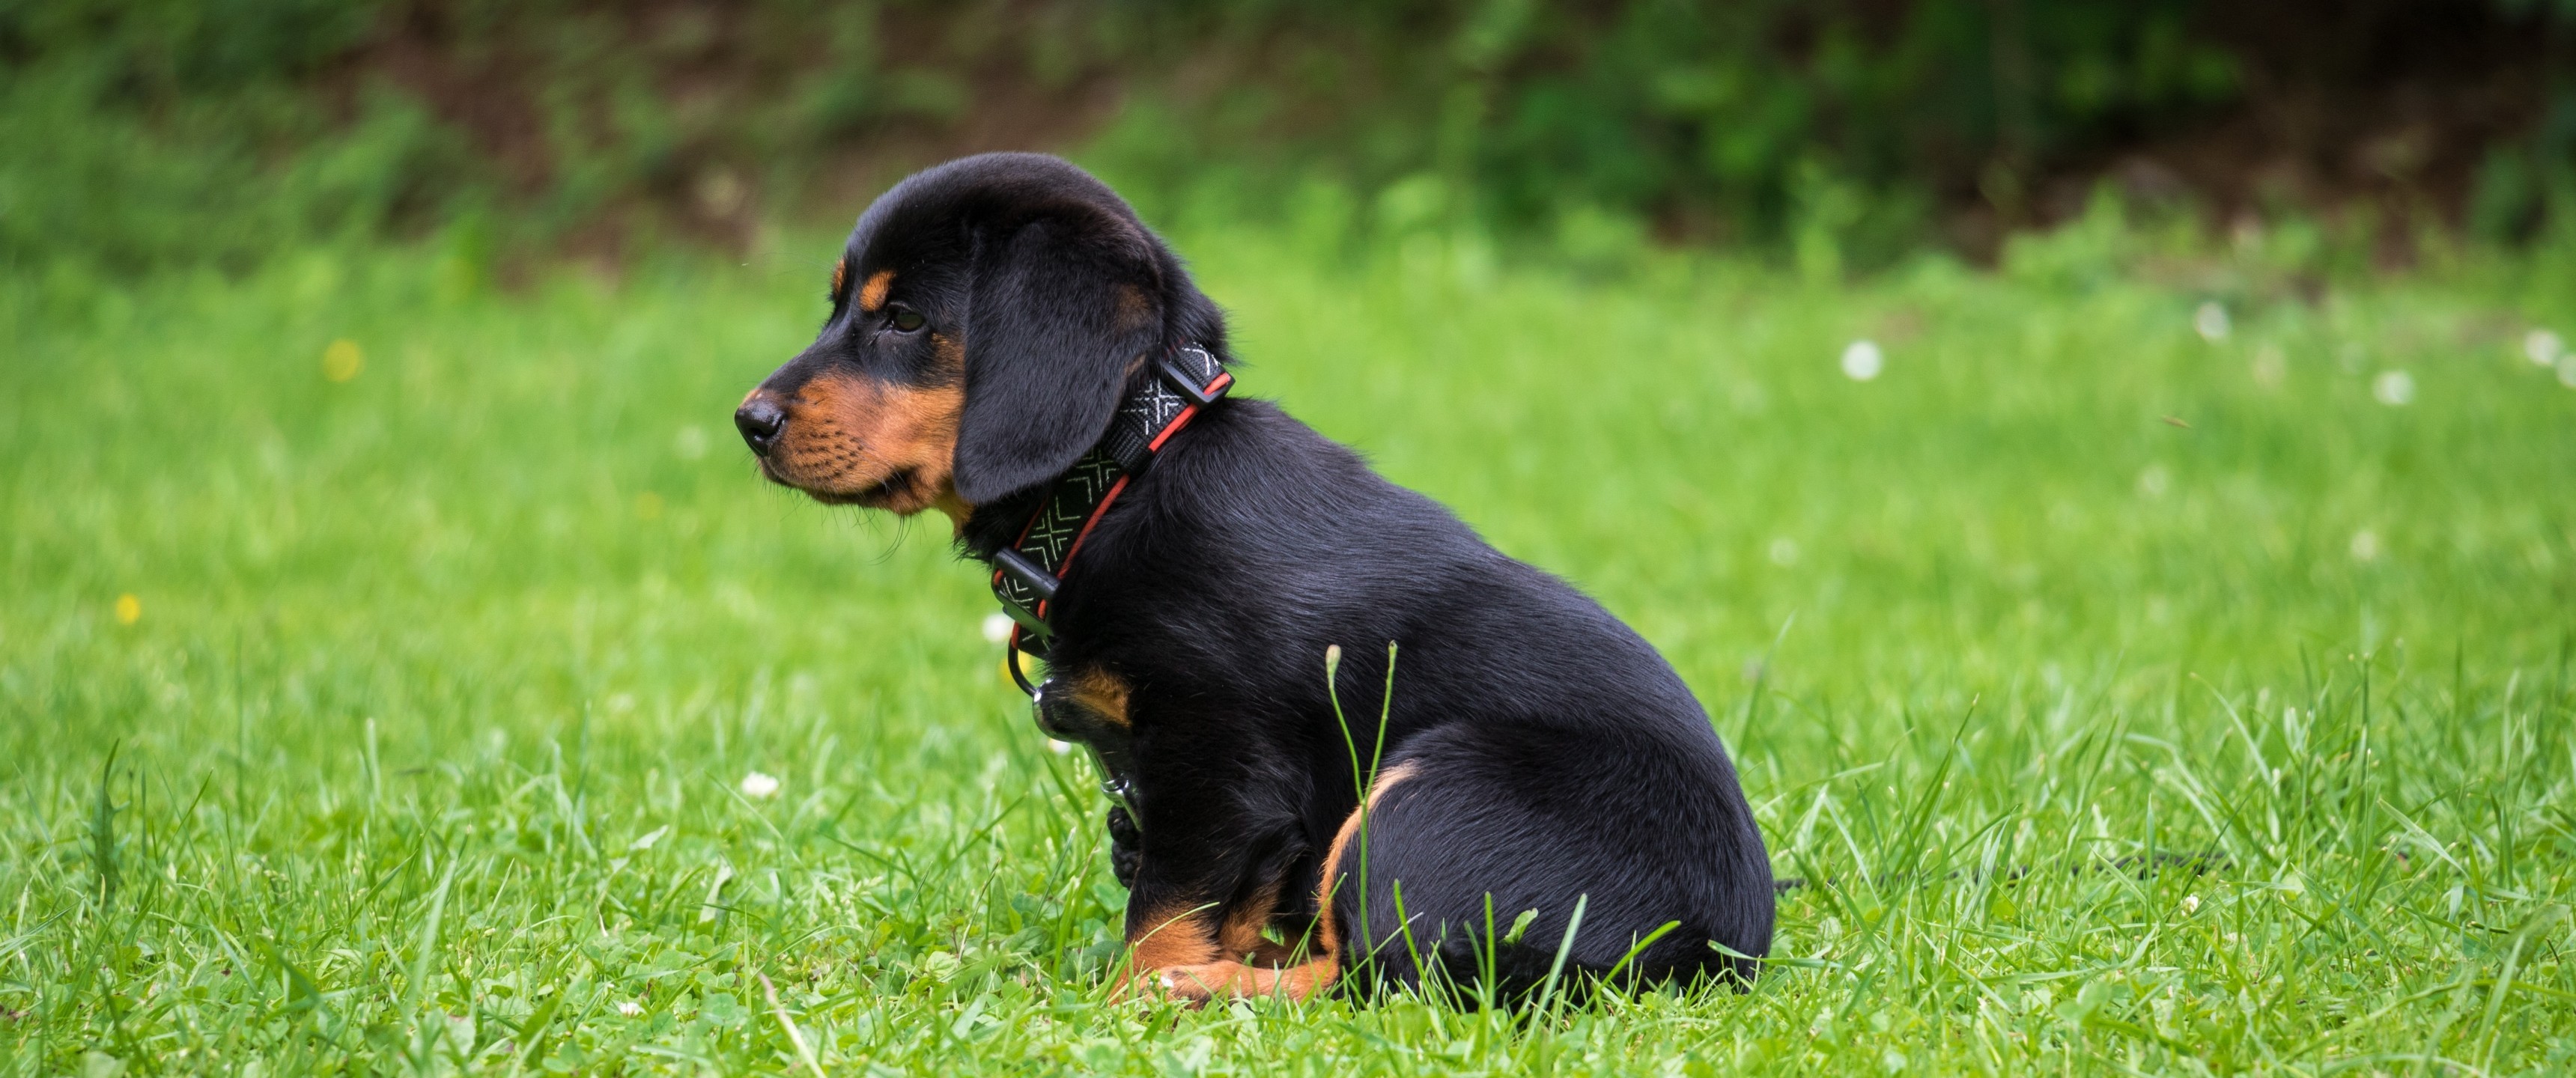 Rottweiler Puppy, Grass, Looking Away - Small Dogs - HD Wallpaper 